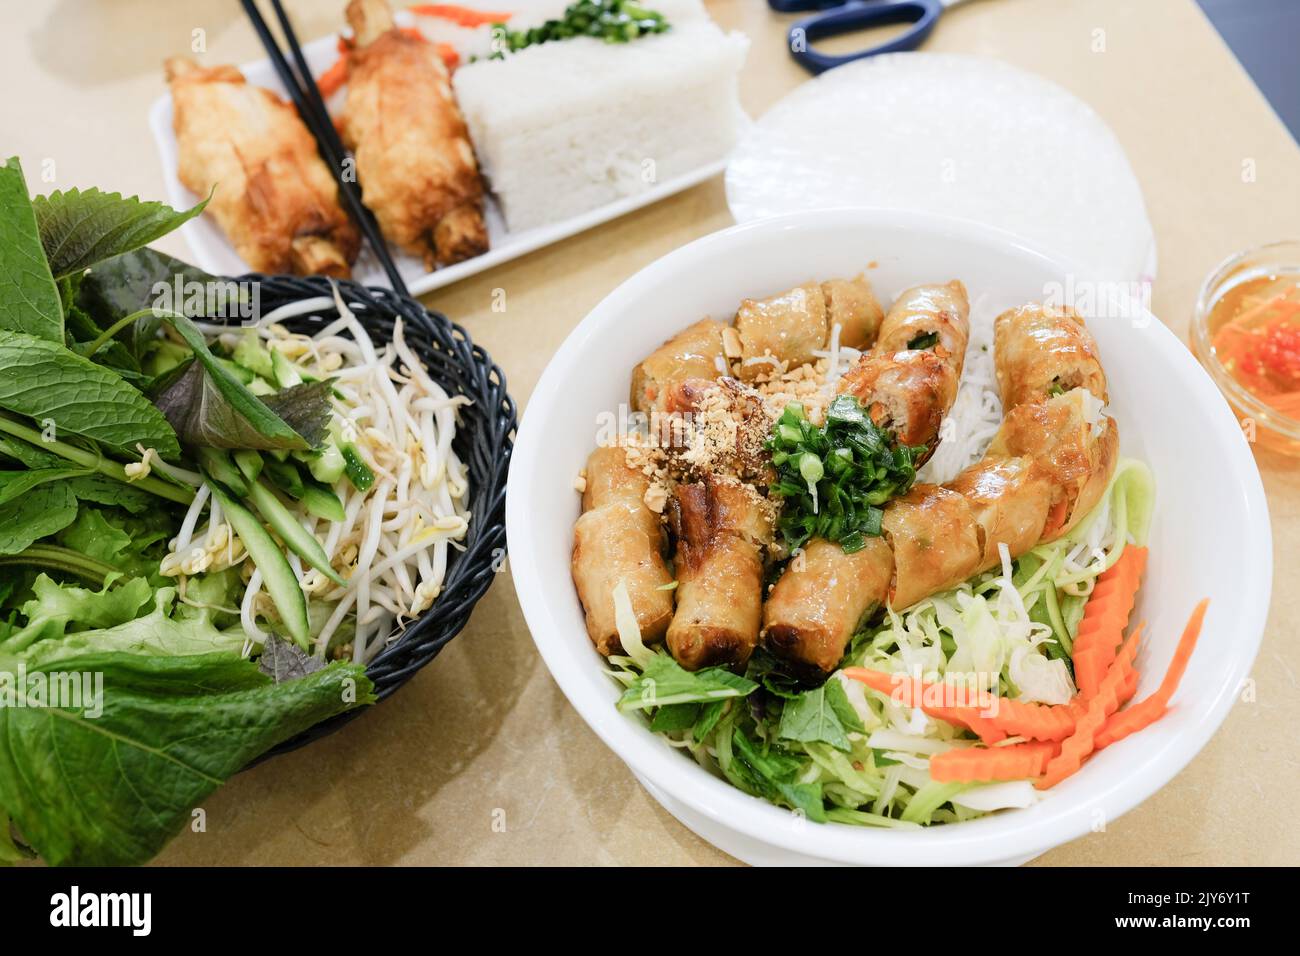 Bún Chả avec rouleaux de printemps et Chả Tôm (crevettes de canne à sucre) avec papier de riz au Phu Quoc, un restaurant vietnamien à Cabramatta — Sydney, Australie Banque D'Images